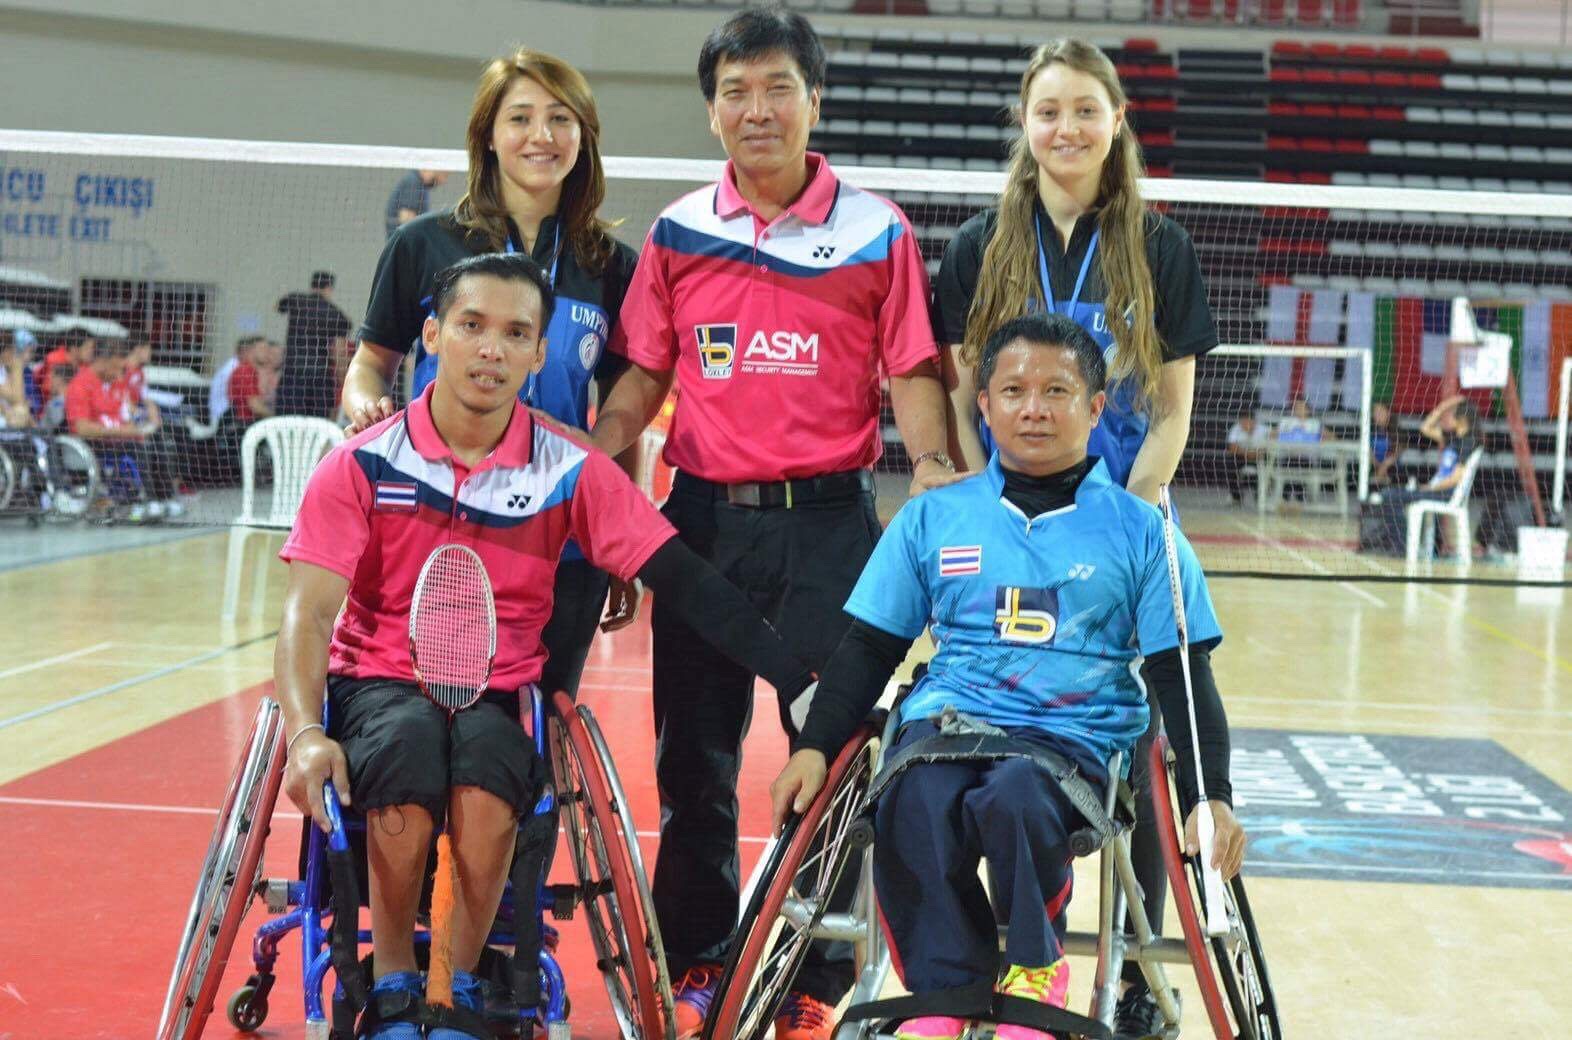 นักกีฬาแบดมินตันคนพิการของไทยโชว์ผลงานยอดเยี่ยม เข้าชิงชนะเลิศ 6 รุ่นที่ประเทศตุรกี